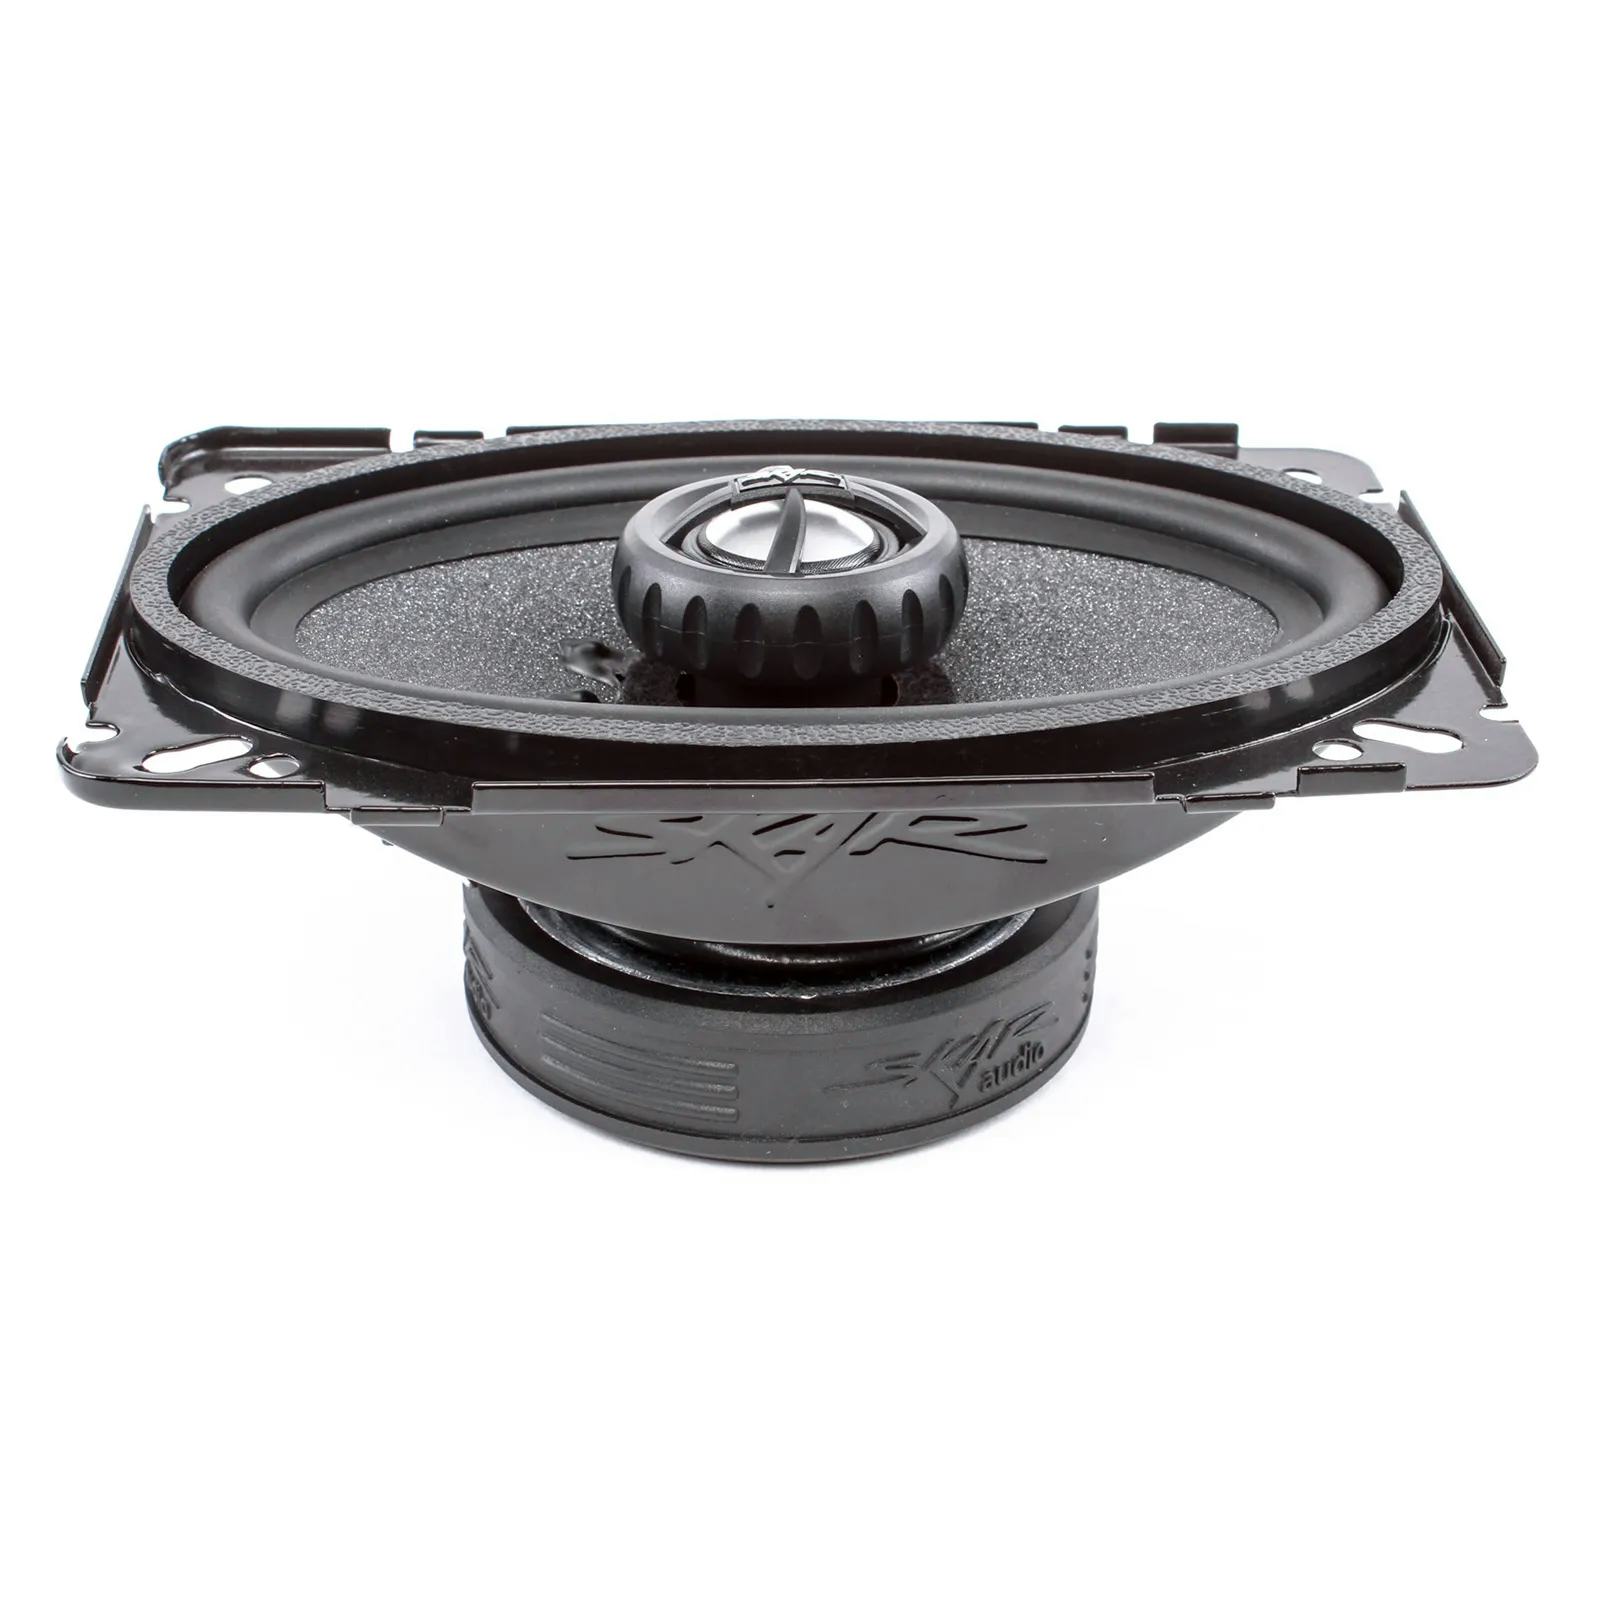 RPX46 | 4" x 6" 150 Watt Coaxial Car Speakers - Pair #3